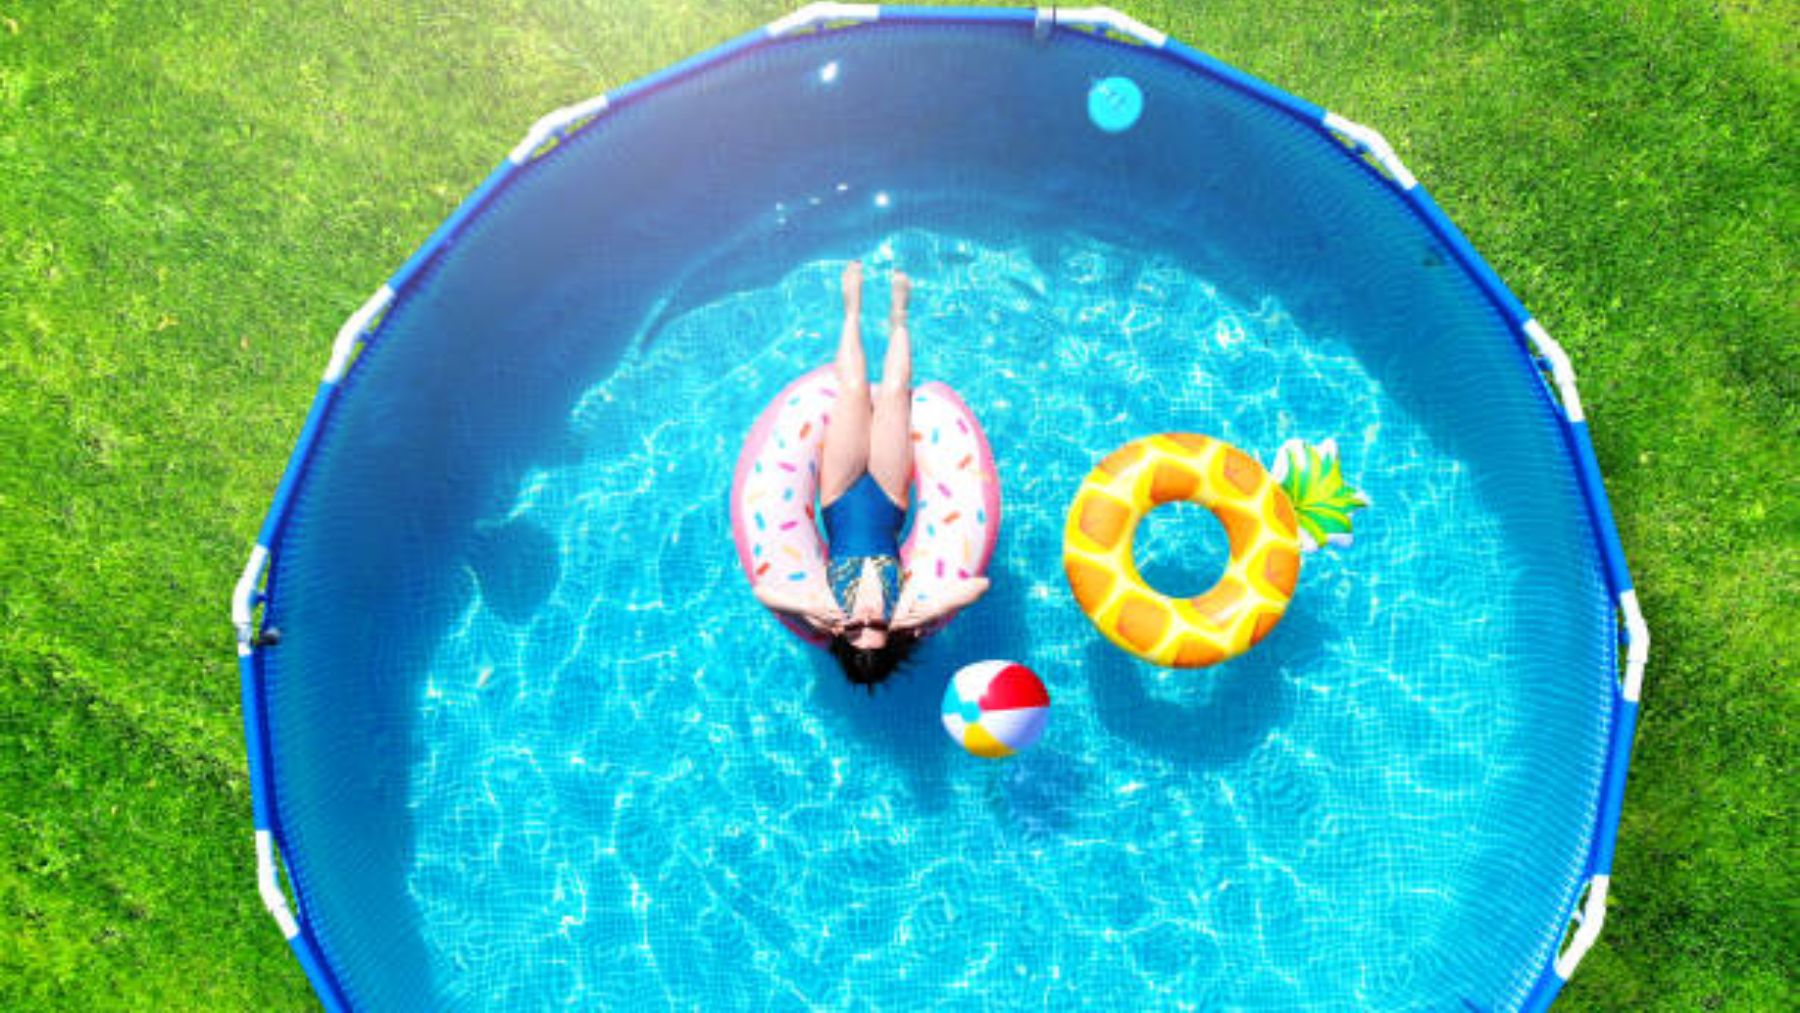 Las enfermedades a las que te arriesgas teniendo piscina en el jardin (incluso con el agua limpia)